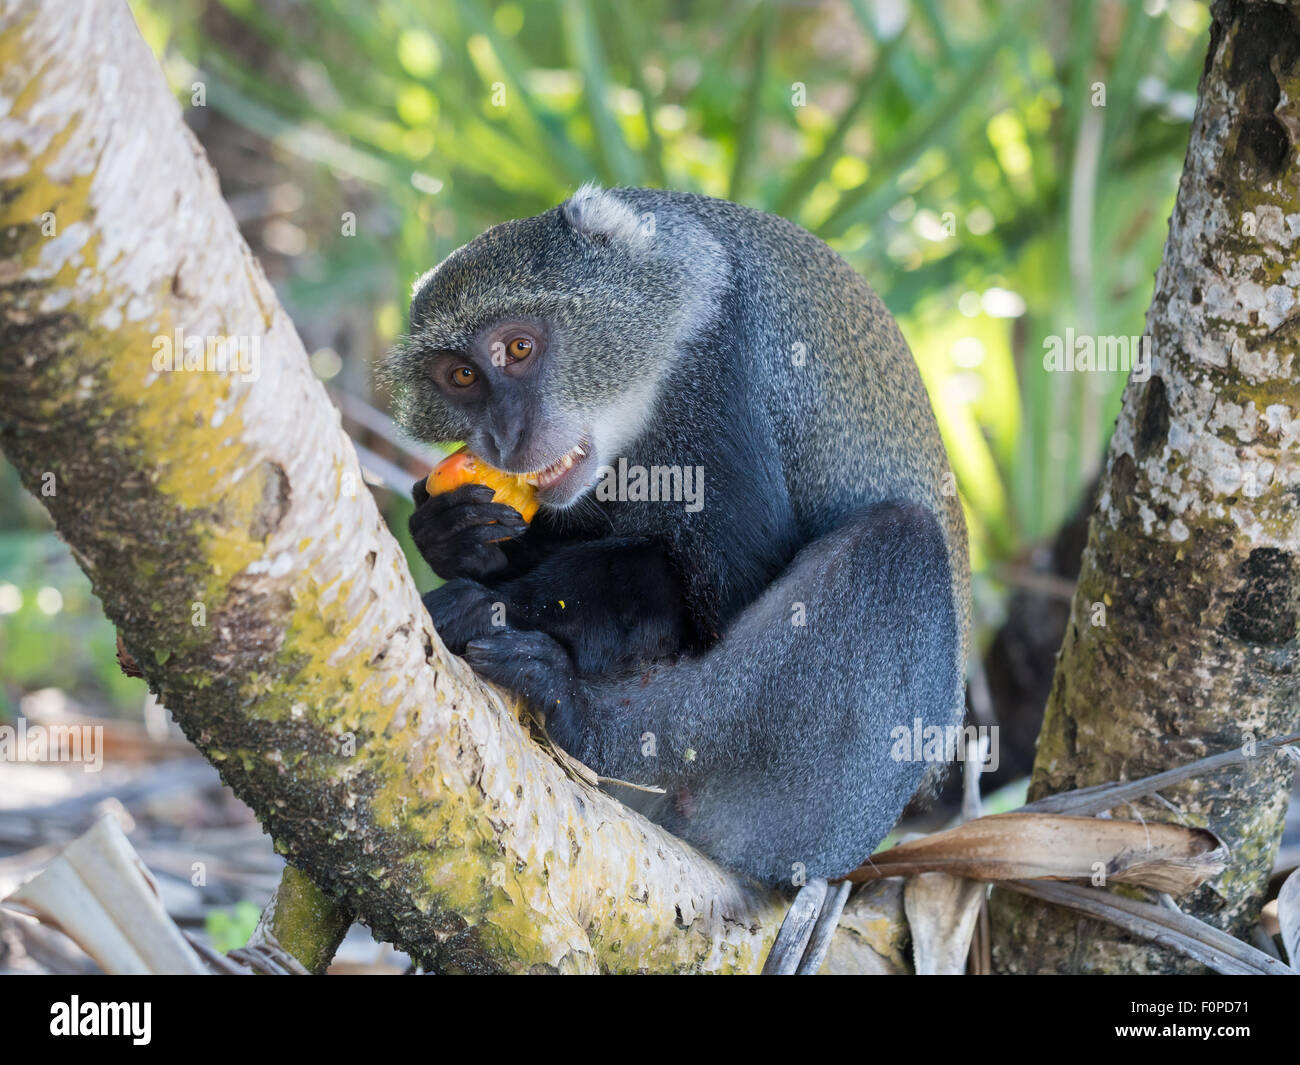 Maschio di sykes di scimmia (Cercopithecus albogularis), noto anche come blue monkey (Cercopithecus mitis) in Tanzania mangiare frutta gialla. Foto Stock